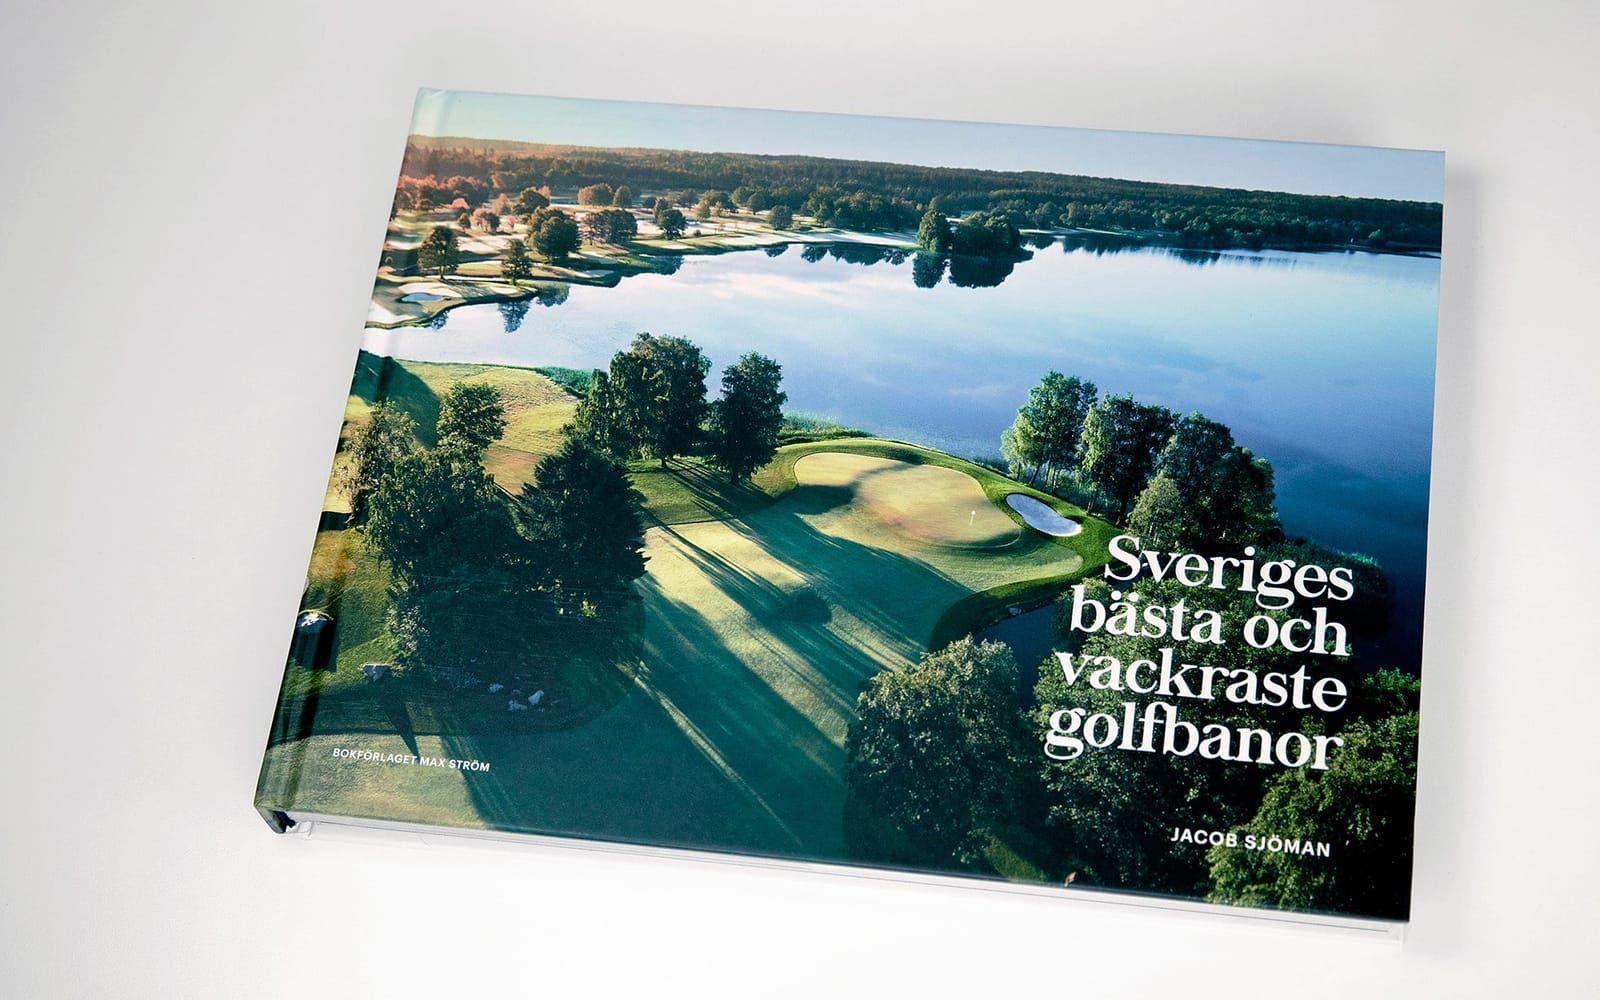 Vackraste golfbanorna. I våras gav Jacob Sjöman ut boken ”Sveriges bästa och vackraste golfbanor”. Foto: Jacob Sjöman